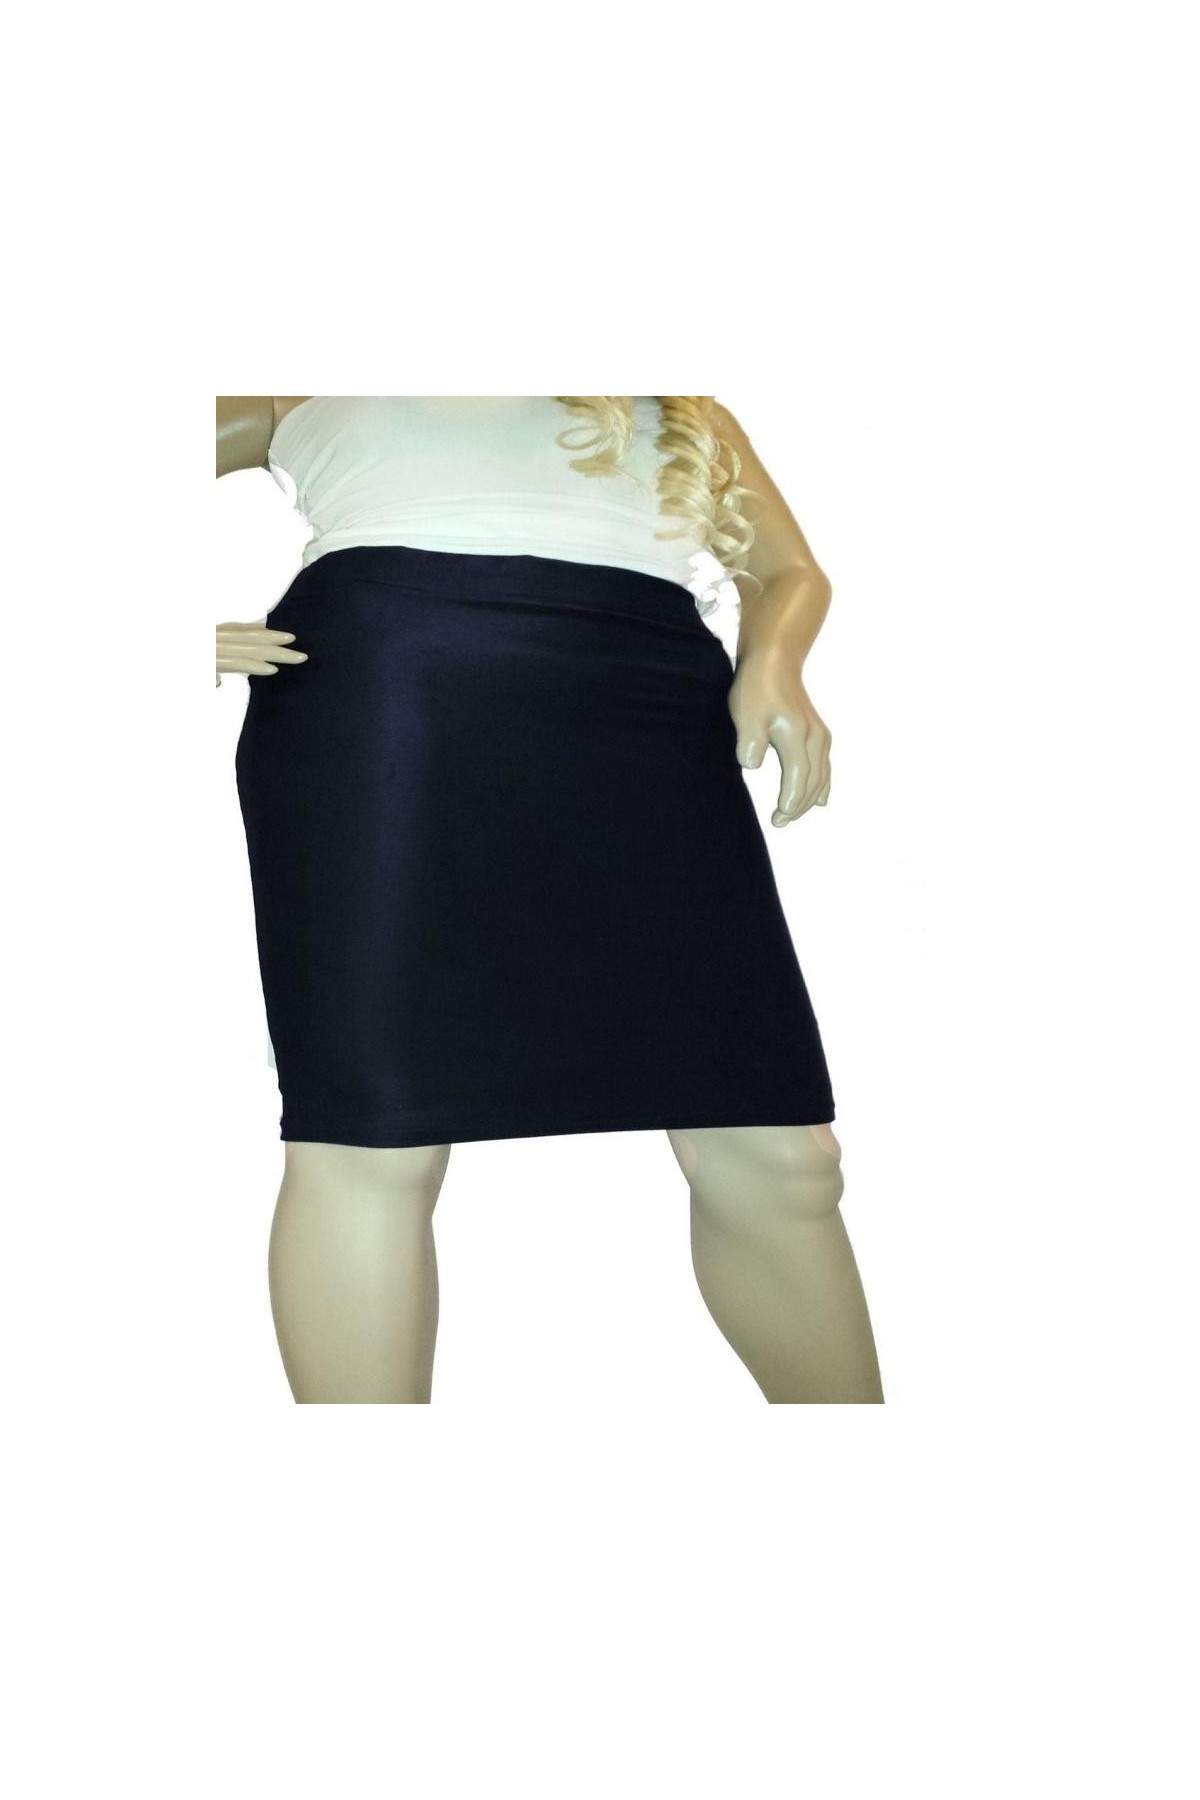 Blue Pencil Skirt Stretch Sizes 44 - 52 Lengths 25cm - 60cm - Deutsche Produktion